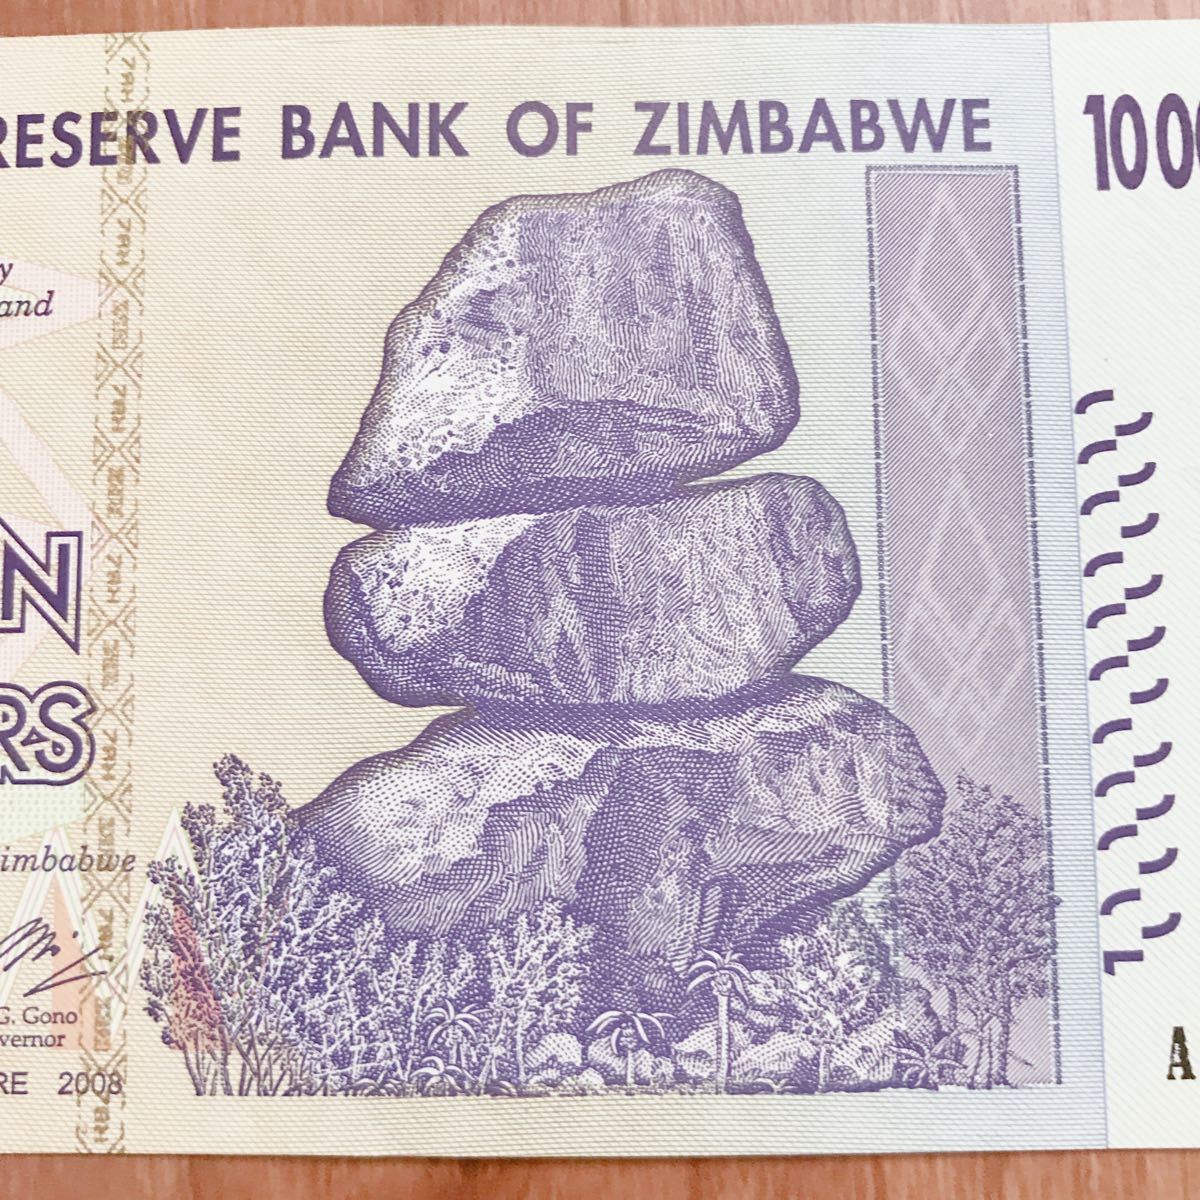 限定専用冊子ケース 完全未使用級 ジンバブエドル紙幣 ジンバブエ紙幣